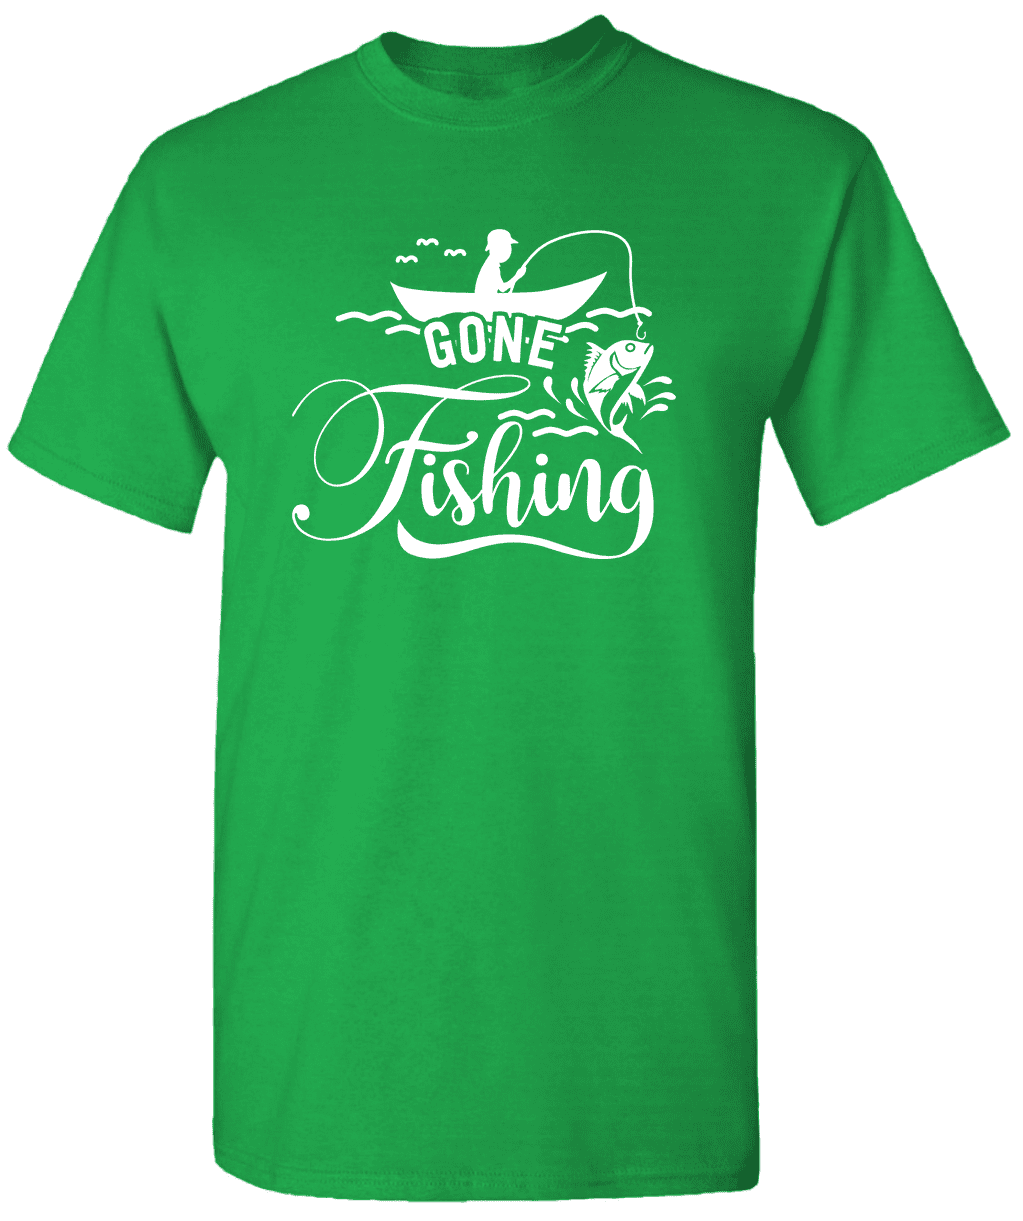 Bass Fishing Shirts Fishing Shirt Brands Gone Fishing Tshirt Fishing Shirt